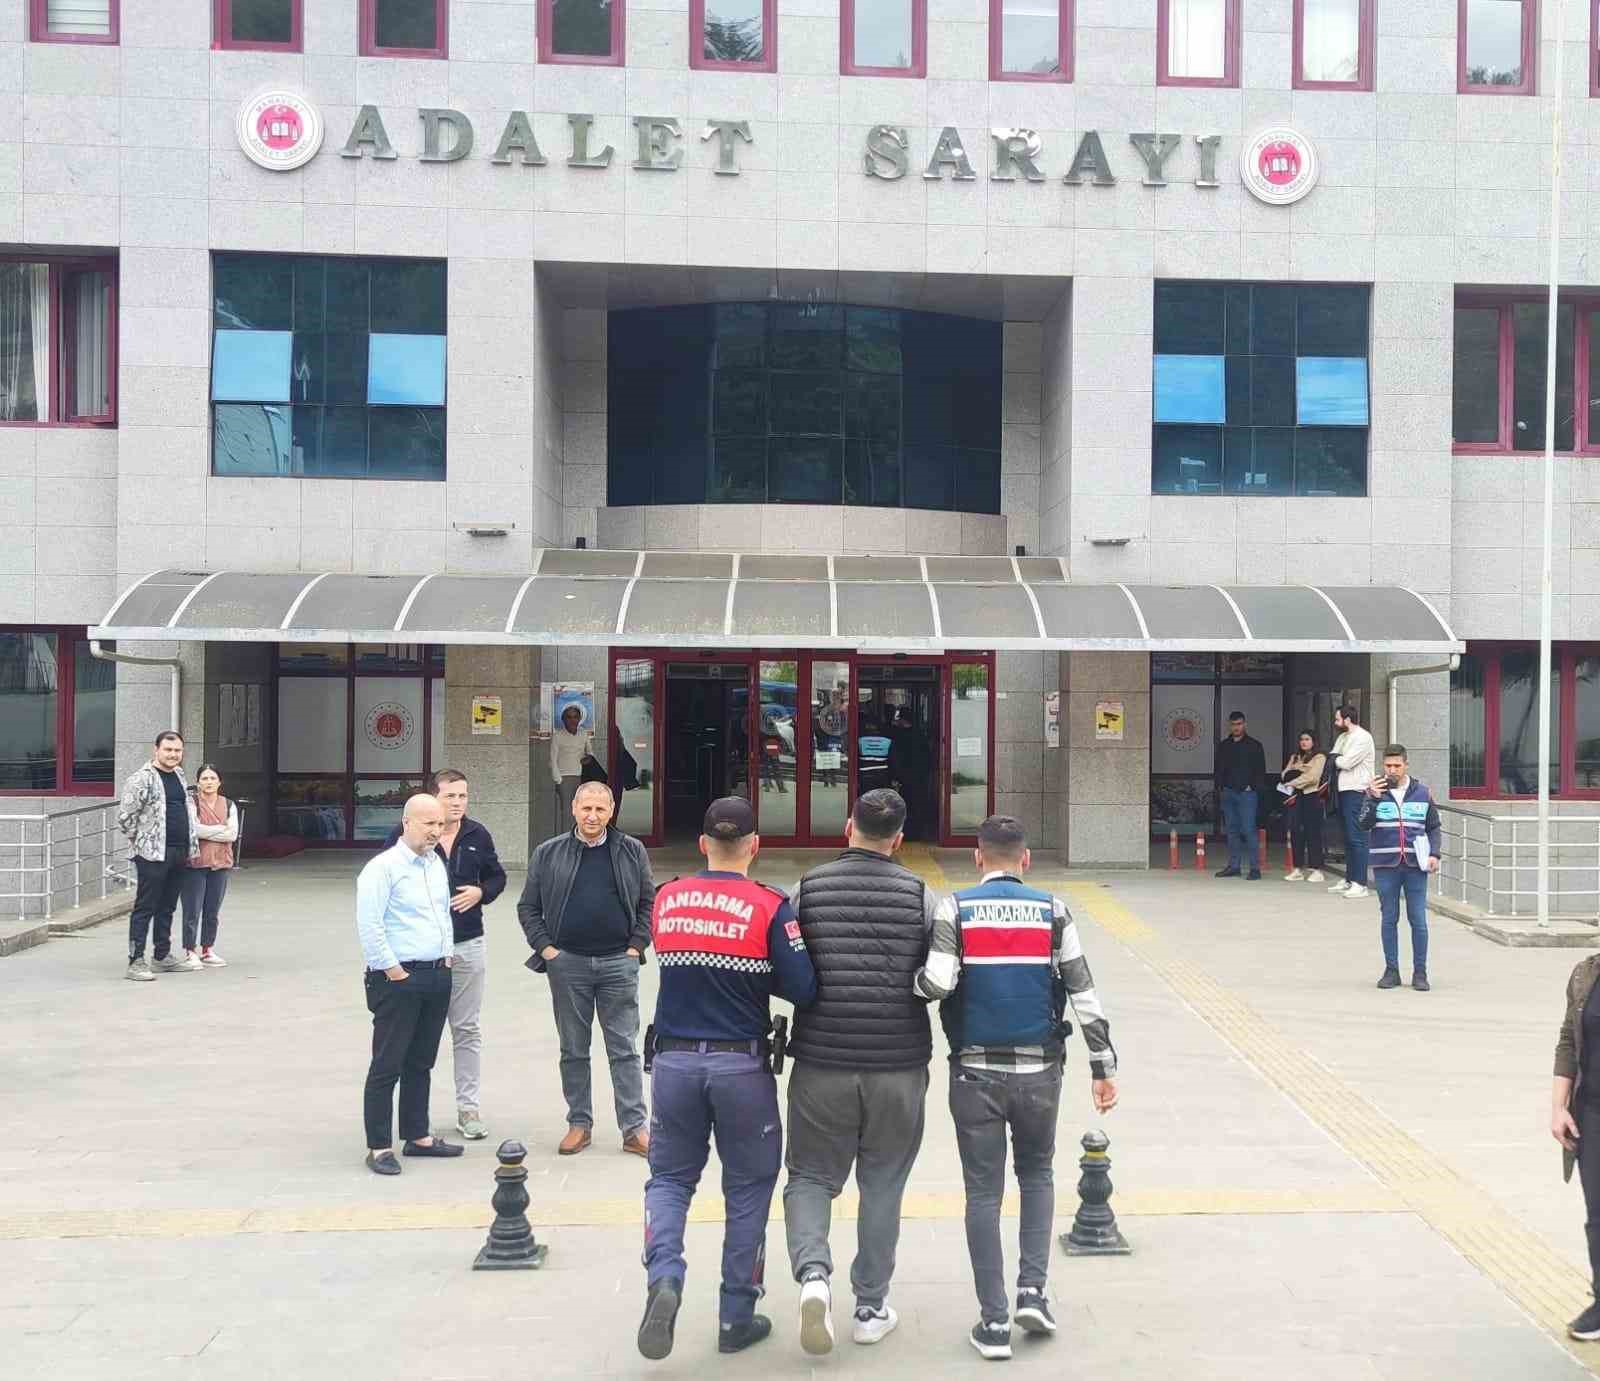 Antalya’da banka çalışanının zimmetine 205 milyon TL geçirme olayına 8 tutuklama